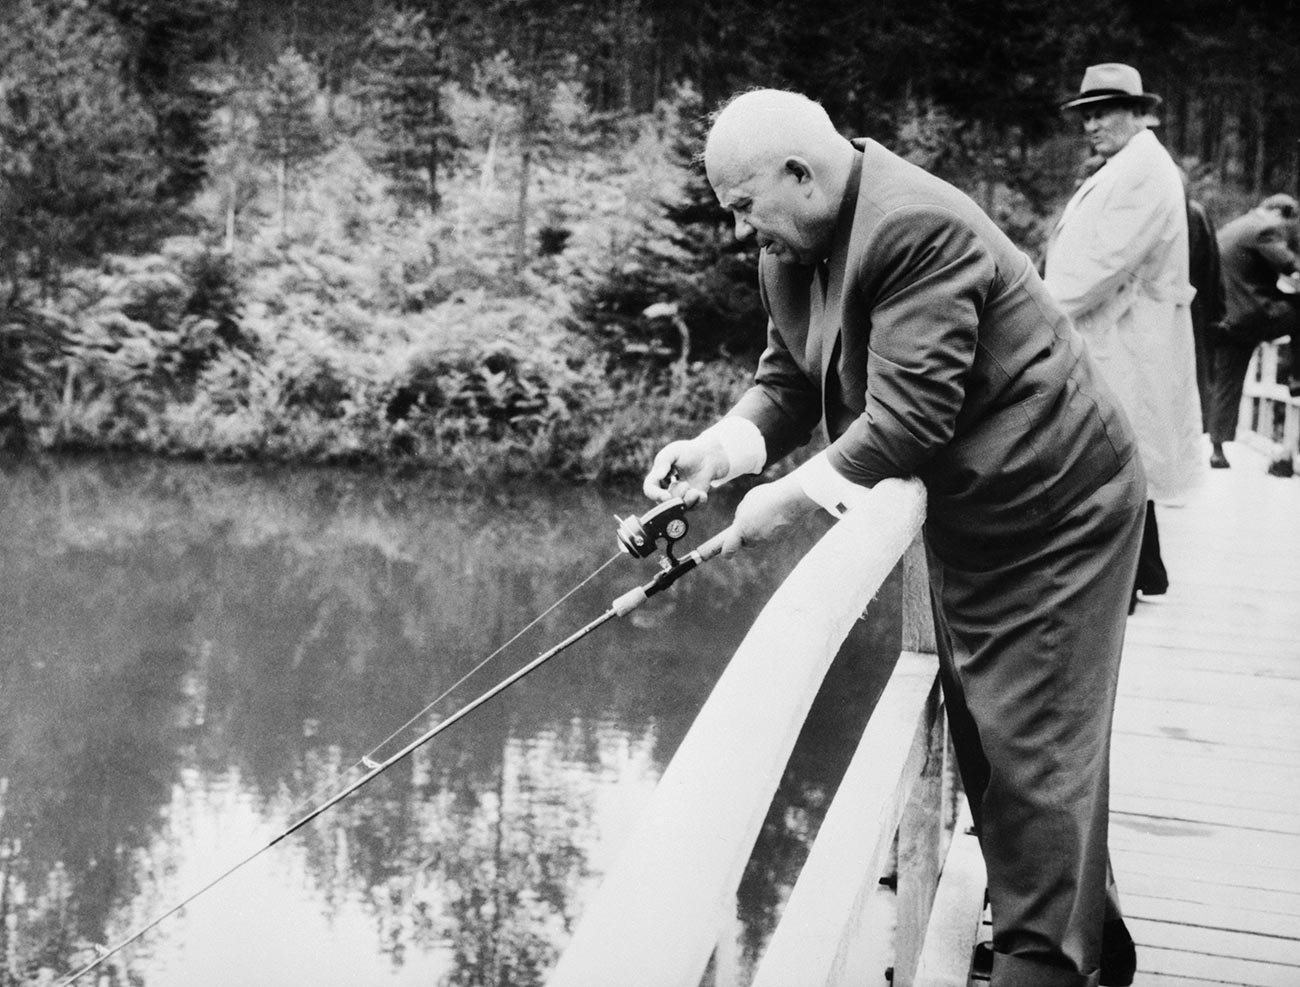 Globoka koncentracija. Nikita Hruščov na ribarjenju med 15-dnevnim obiskom Jugoslavije. Pred tem je na novinarski konferenci izjavil, da sta ZSSR in Jugoslavija razrešili vsa nesoglasja in se združili v boju proti kapitalizmu.